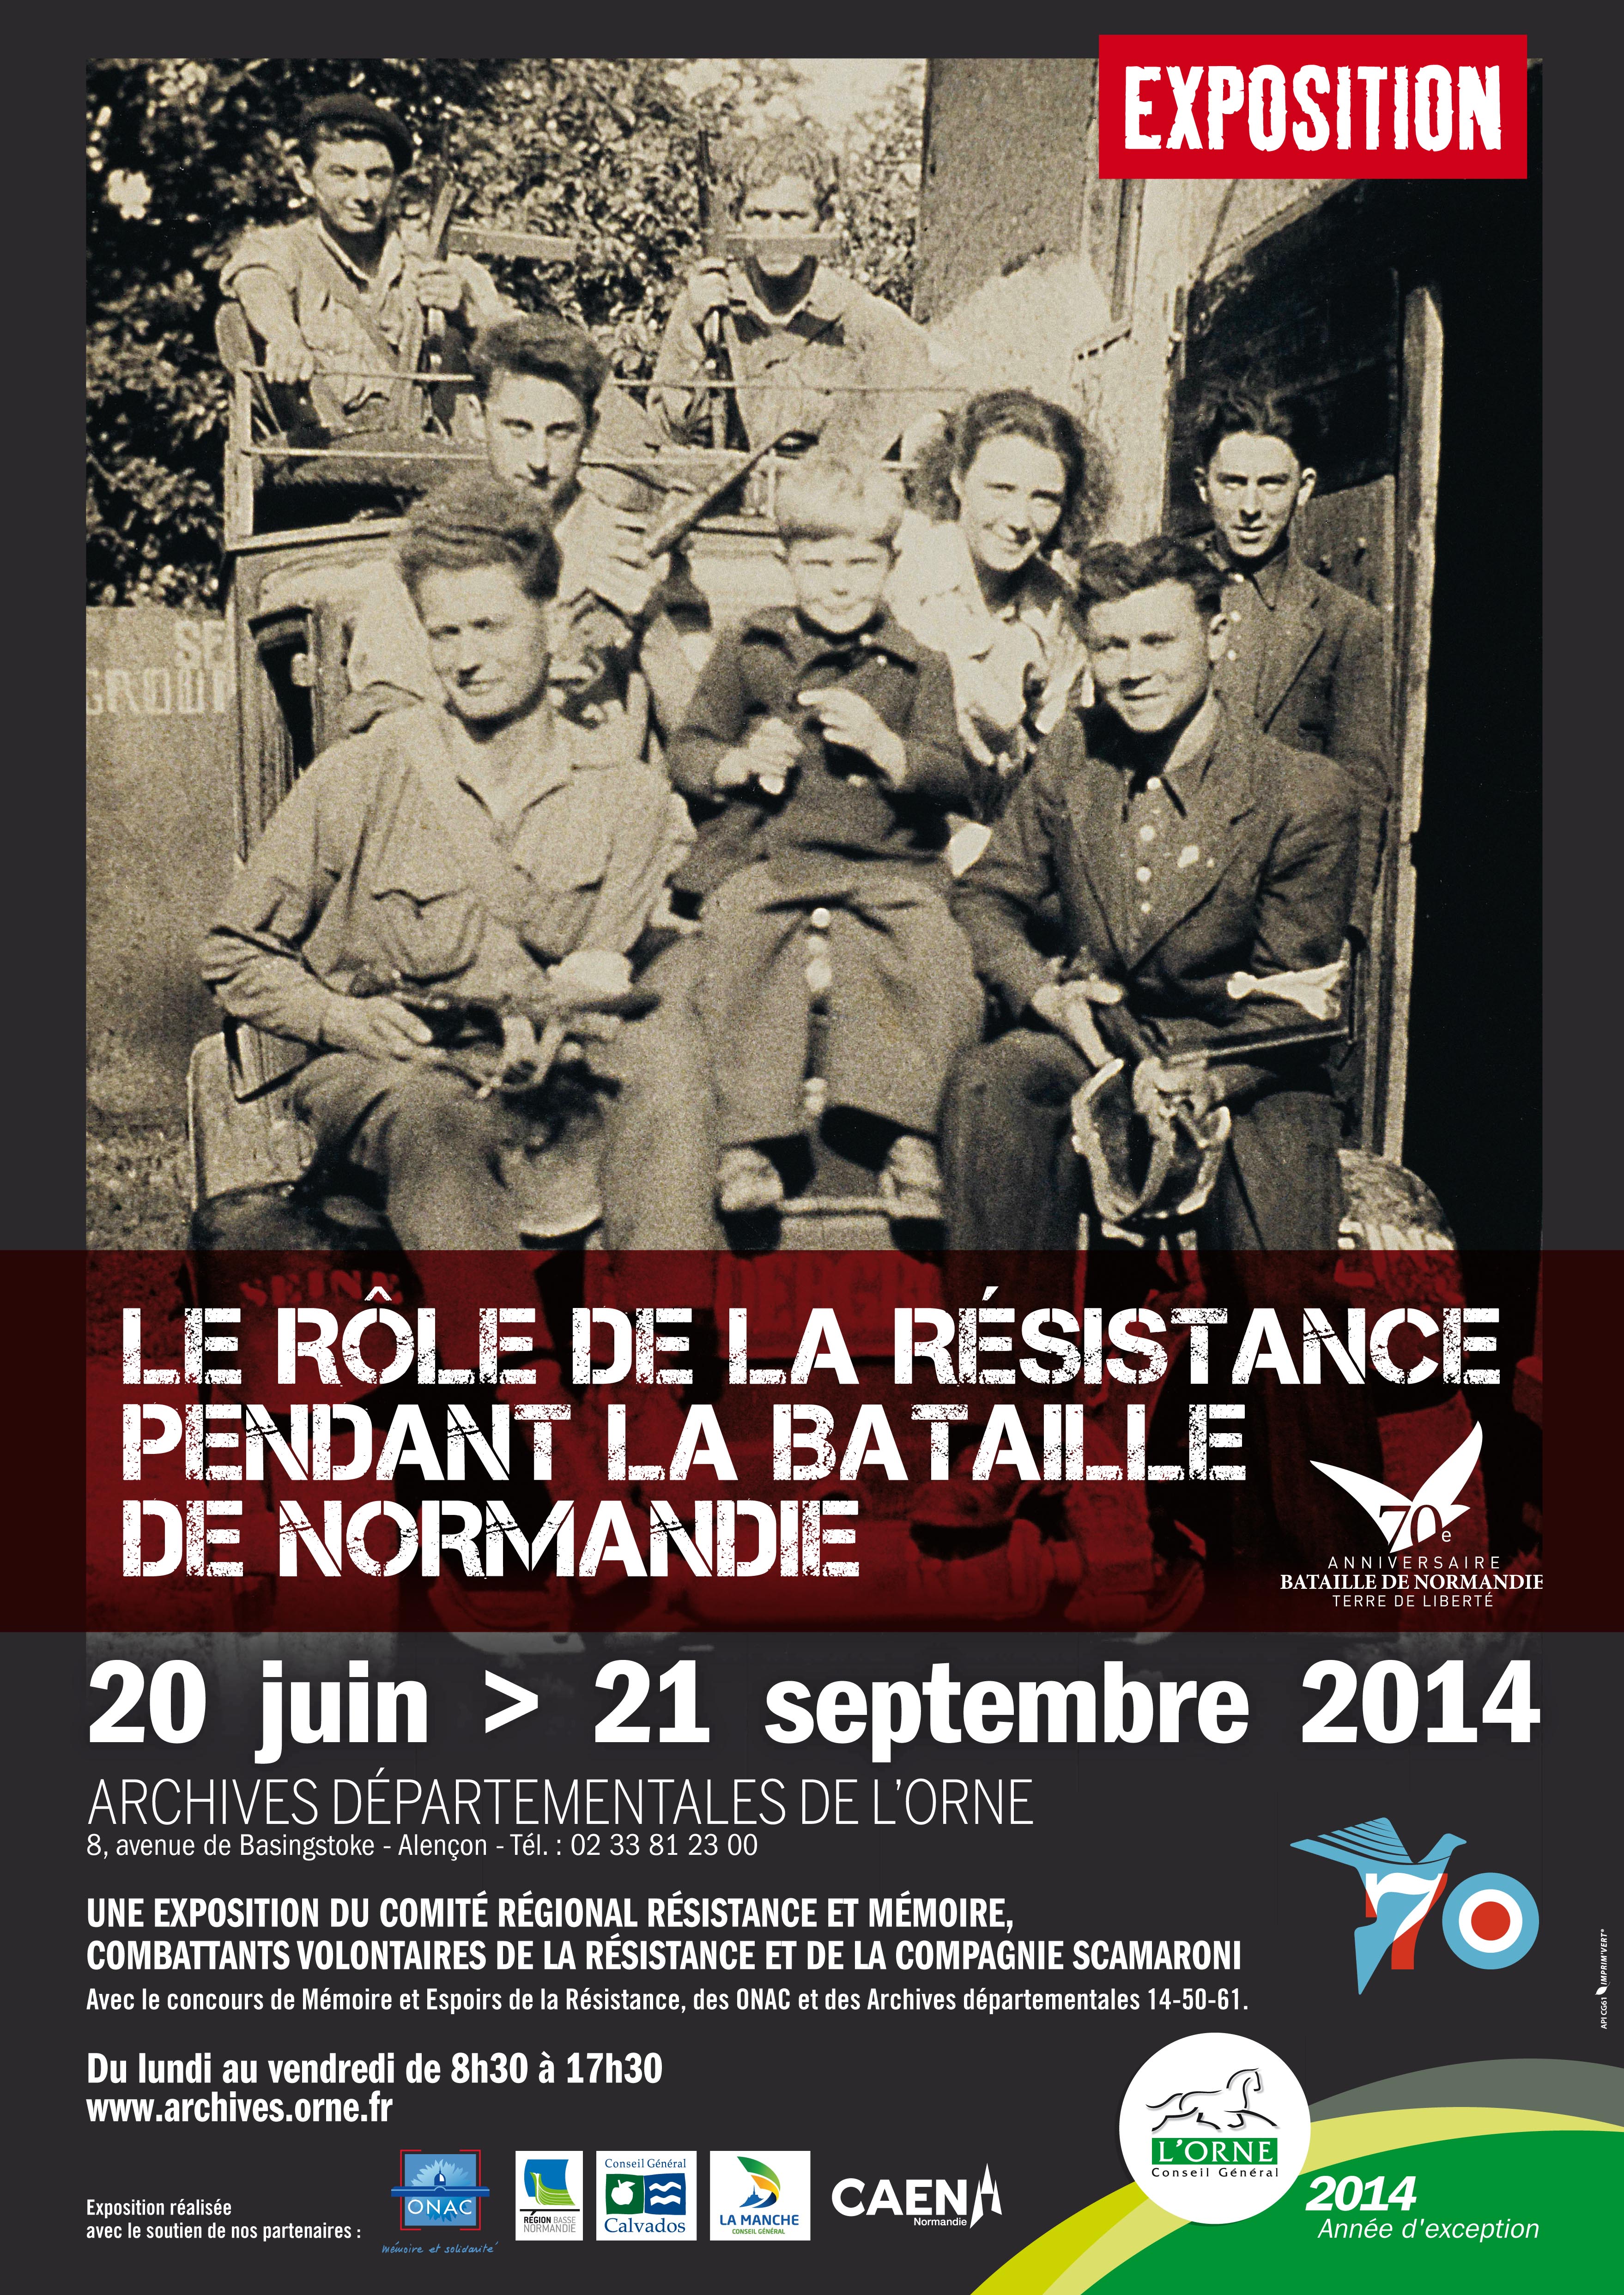 Le rôle de la Résistance dans la bataille de Normandie